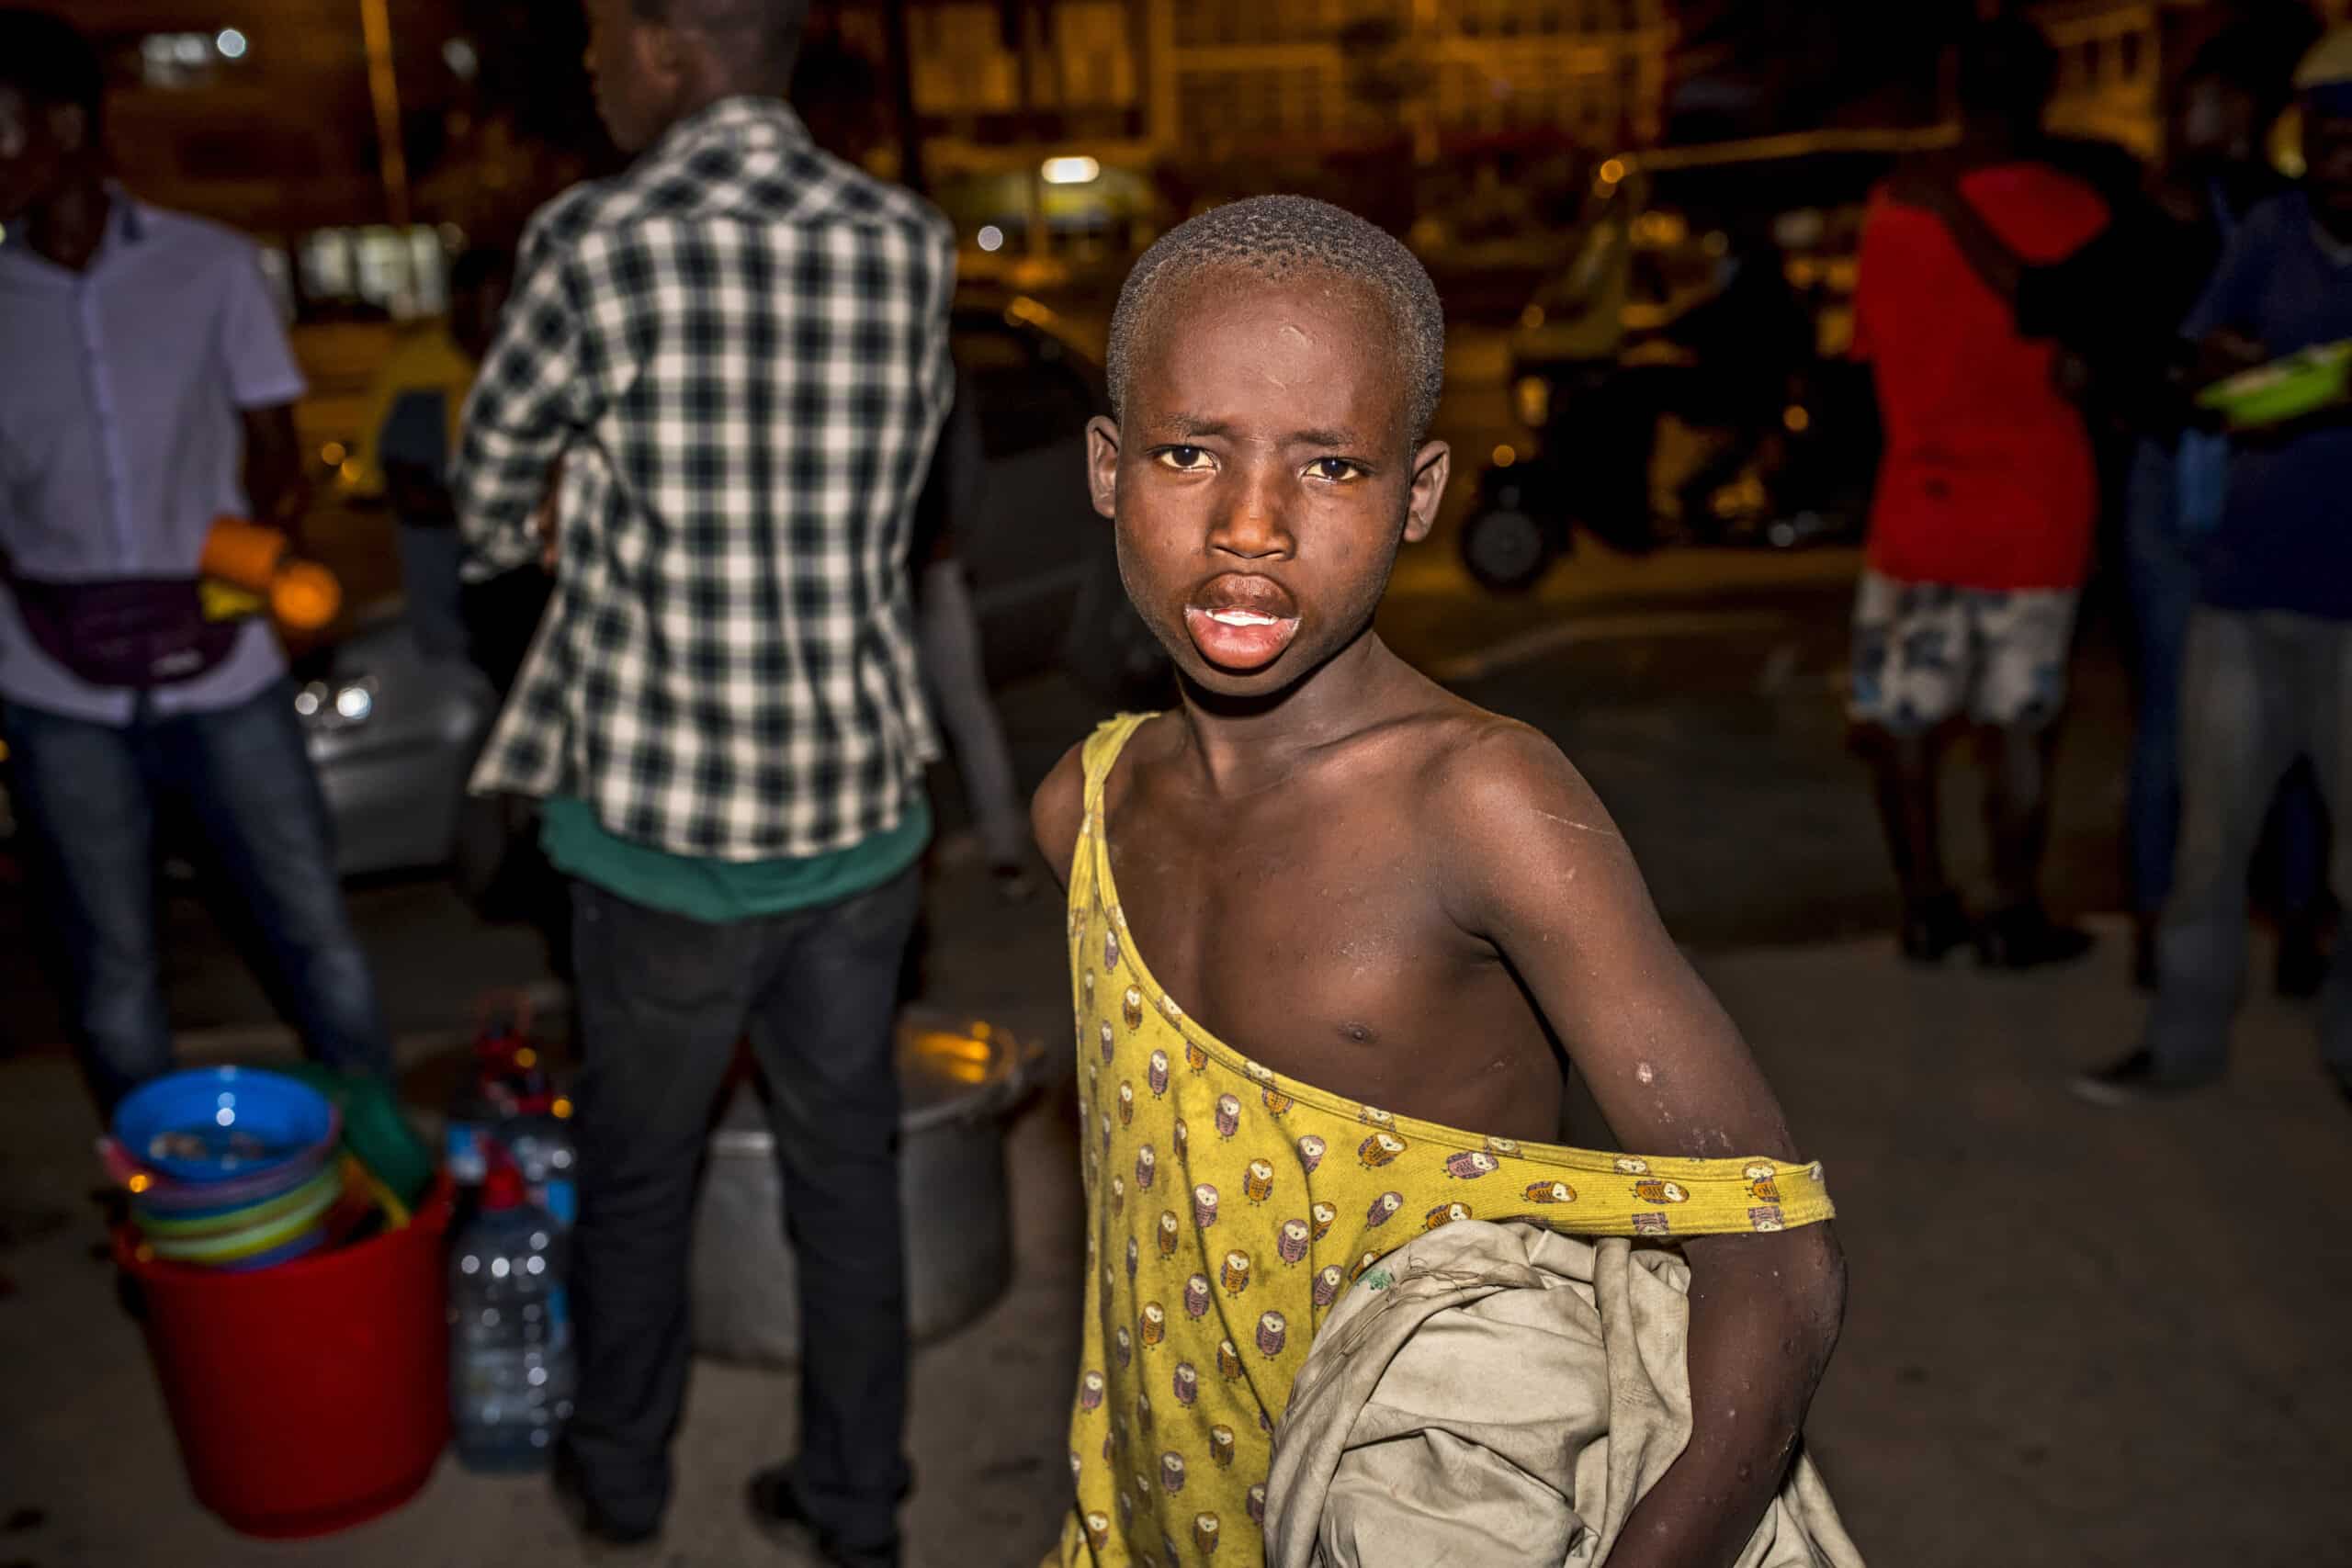 Ein kleiner Junge in einem ärmellosen Oberteil steht überrascht in einer nächtlichen Straßenszenerie. Im unscharfen Hintergrund sind Menschen und Straßenhändler zu sehen. © Fotografie Tomas Rodriguez